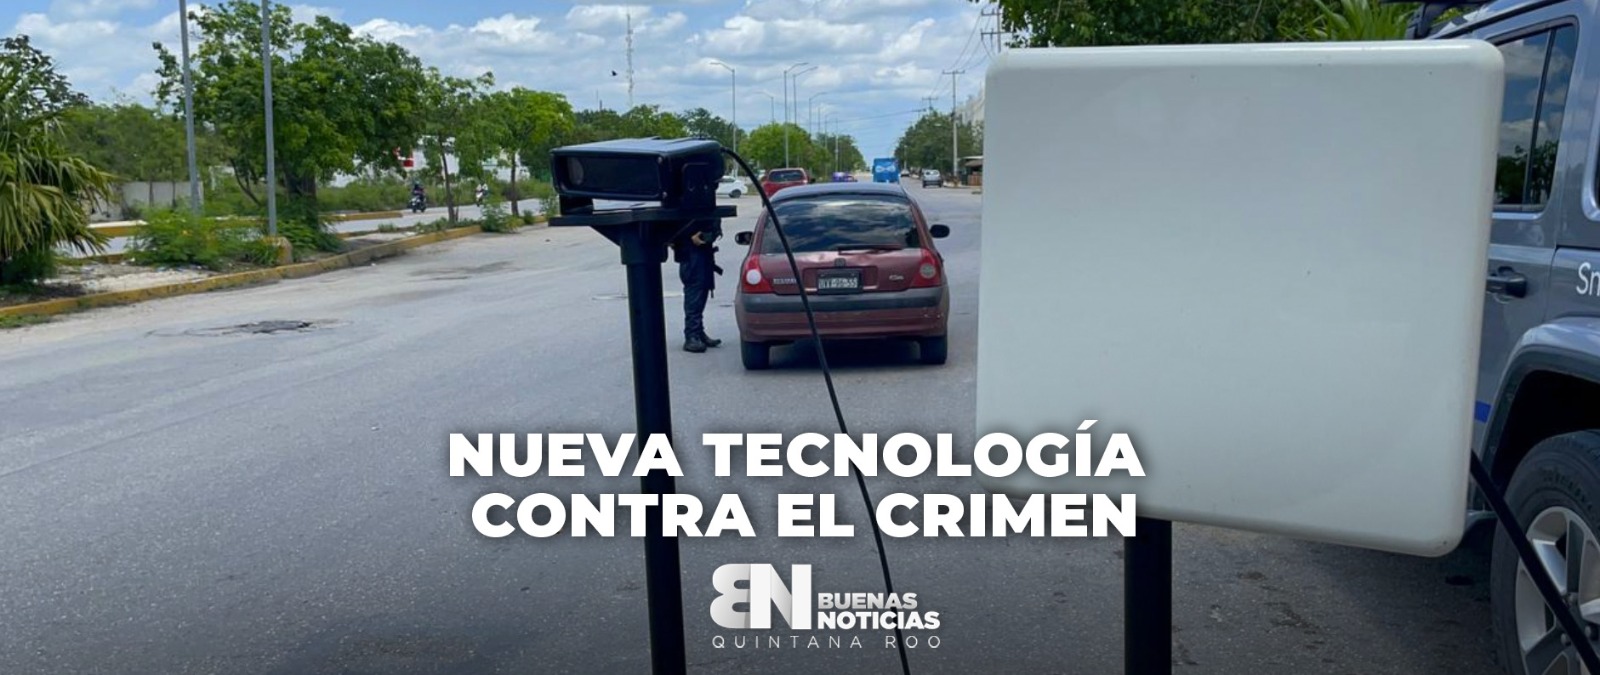 Prueban en Cancún tecnología de Estados Unidos contra el crimen